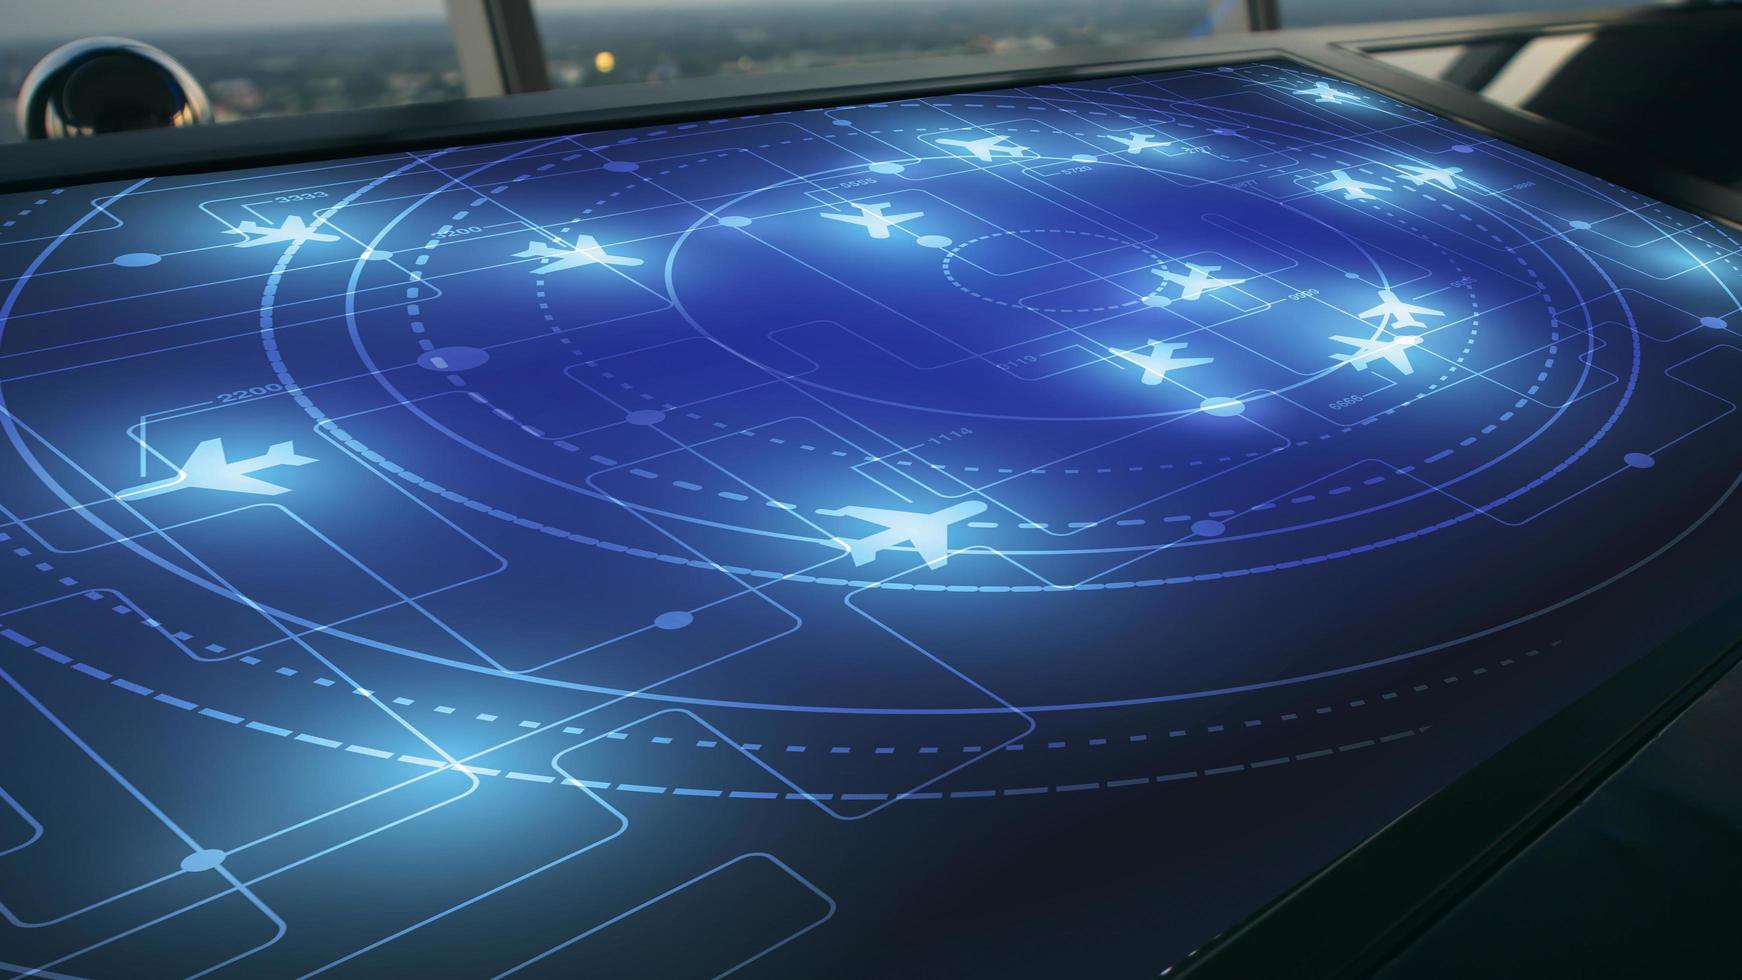 Simulationsbildschirm mit verschiedenen Flügen für Transport und Passagiere. foto